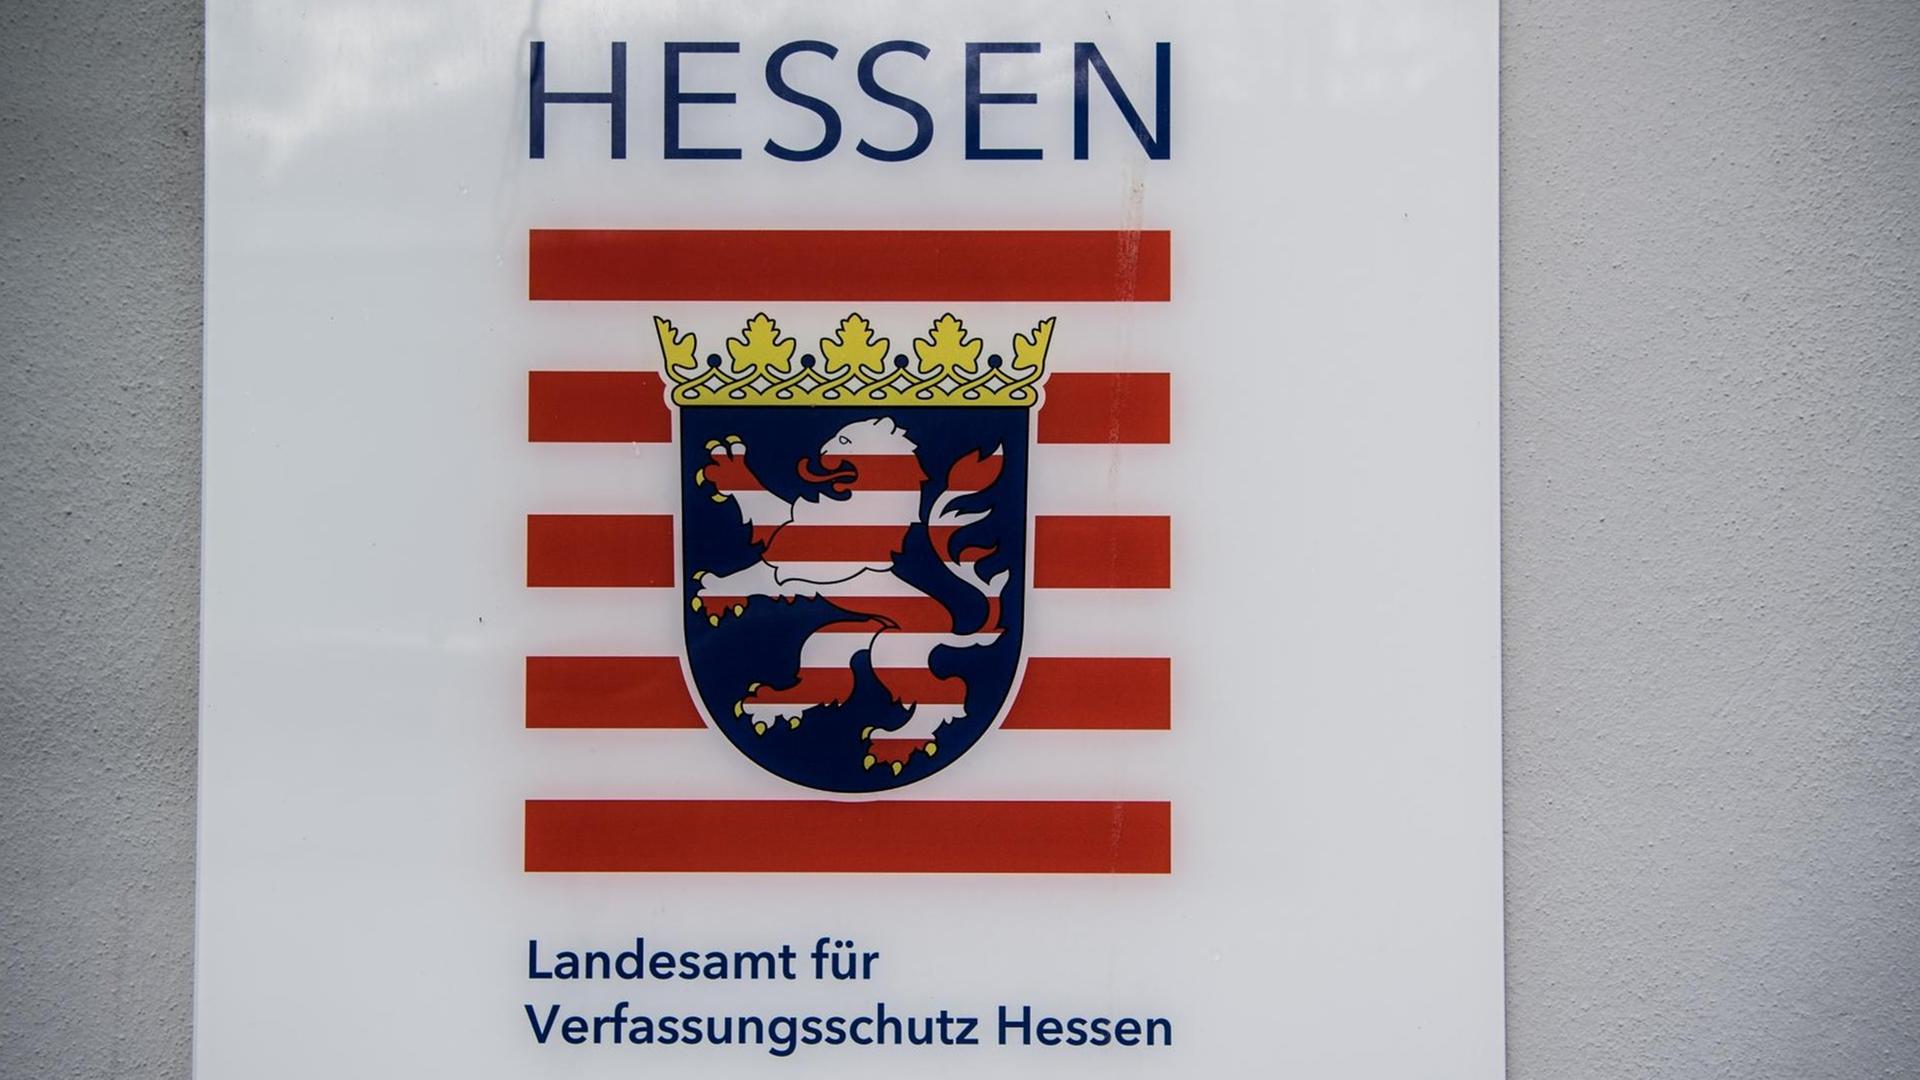 11.03.2019, Hessen, Wiesbaden: Das Schild "Landesamt für Verfassungsschutz Hessen" ist an einem Gebäude angebracht. Foto: Andreas Arnold/dpa